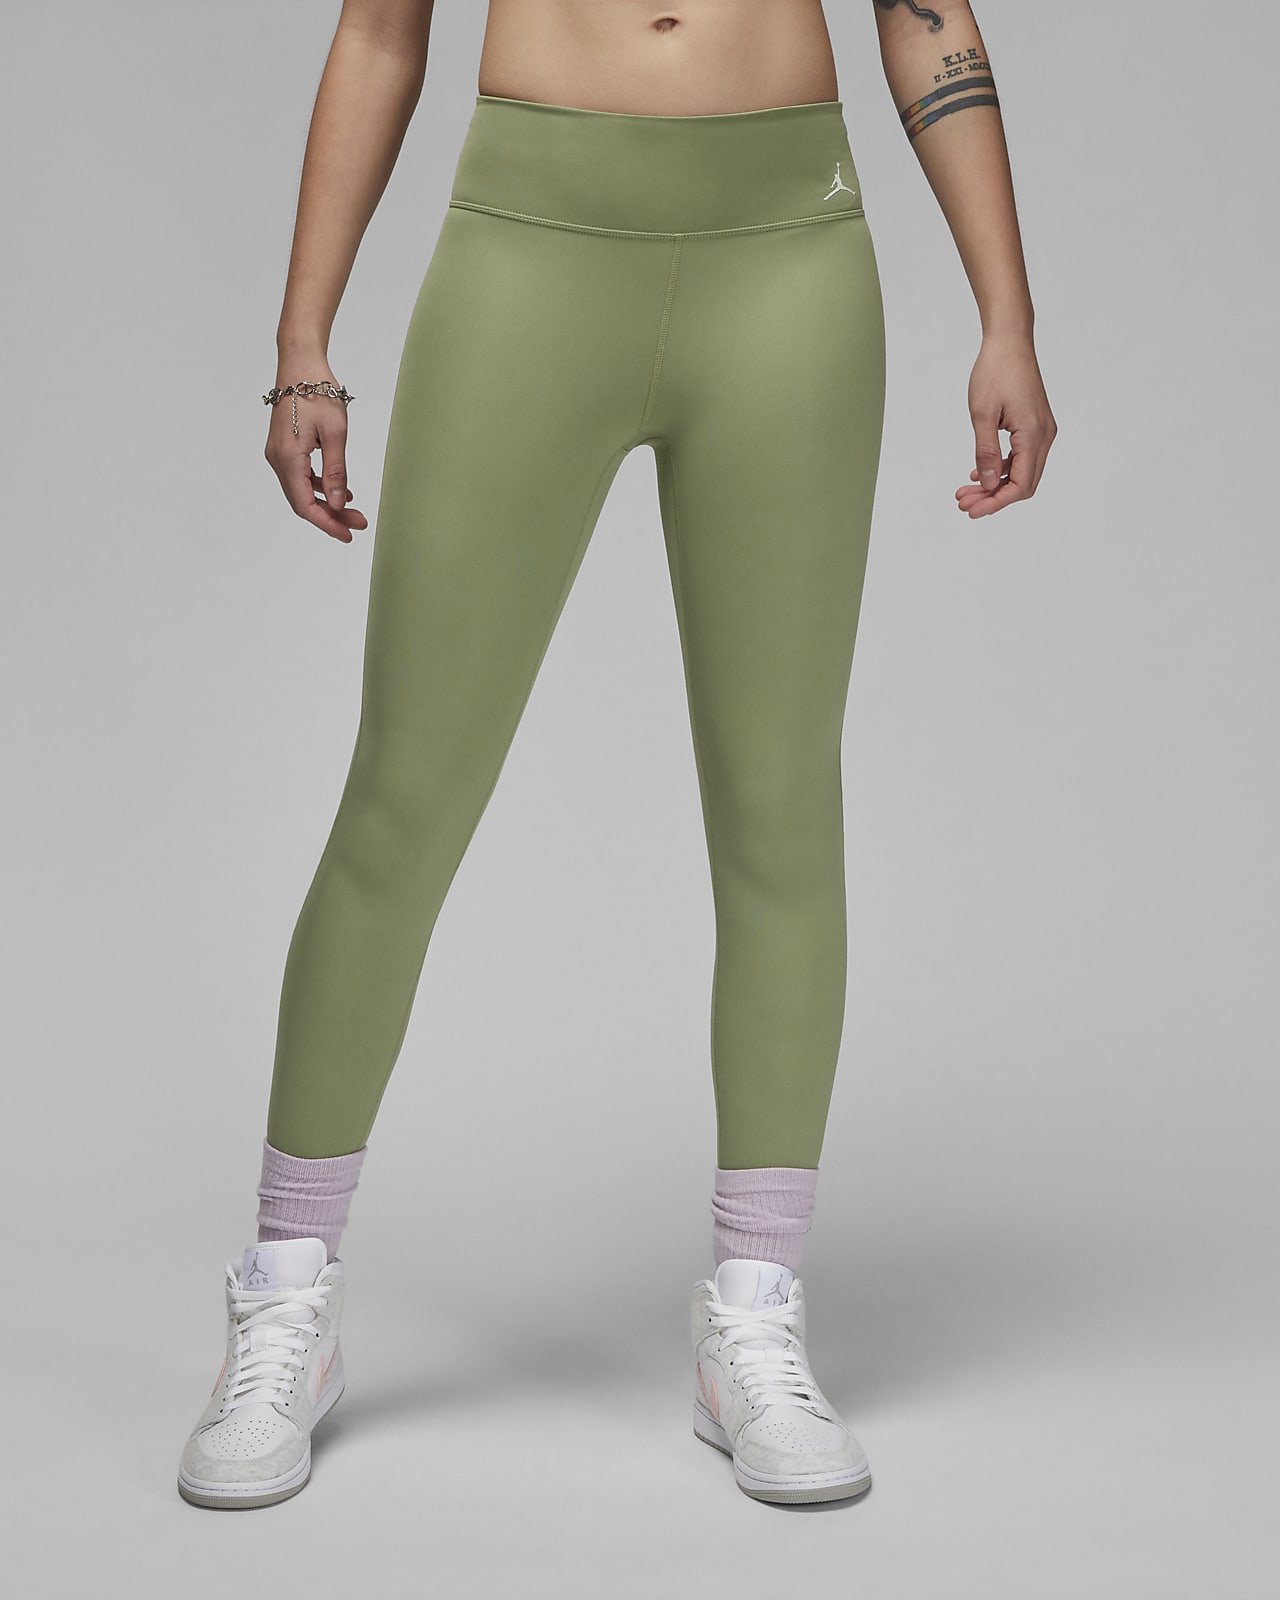 Jordan Women's Leggings. Nike.com